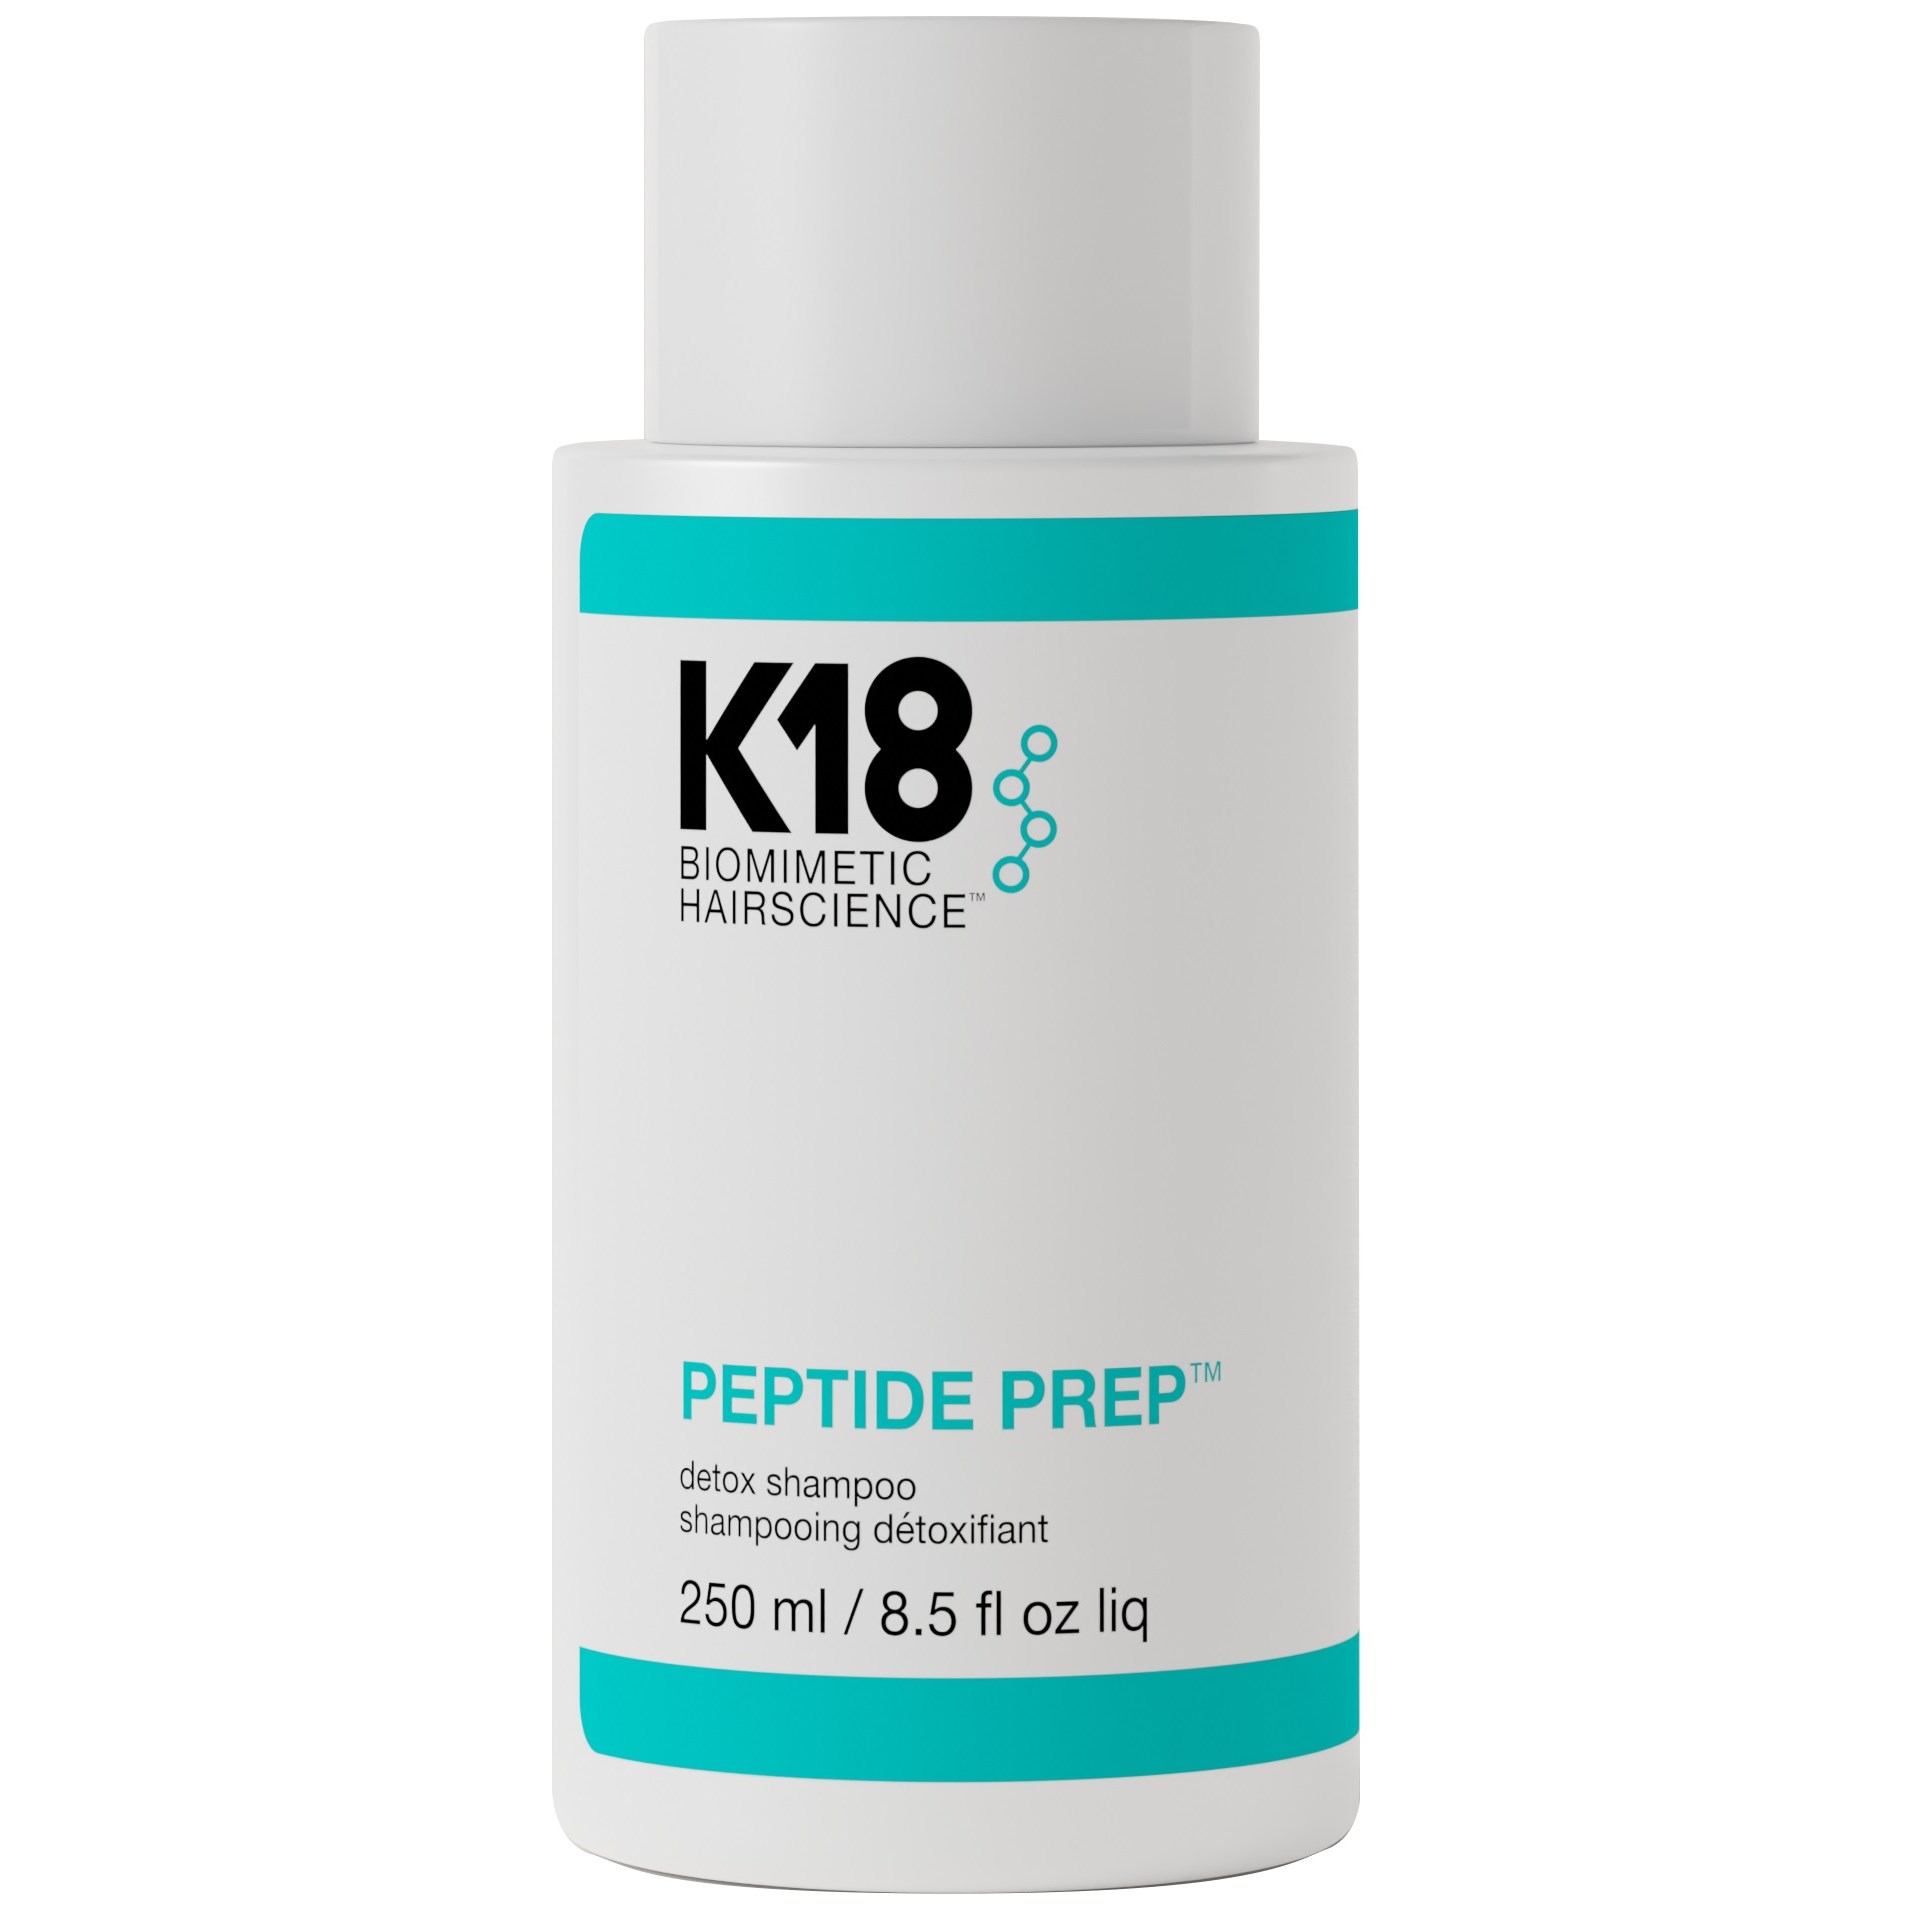 Bilde av K18 Peptide Prep™ Detox Shampoo 250 Ml